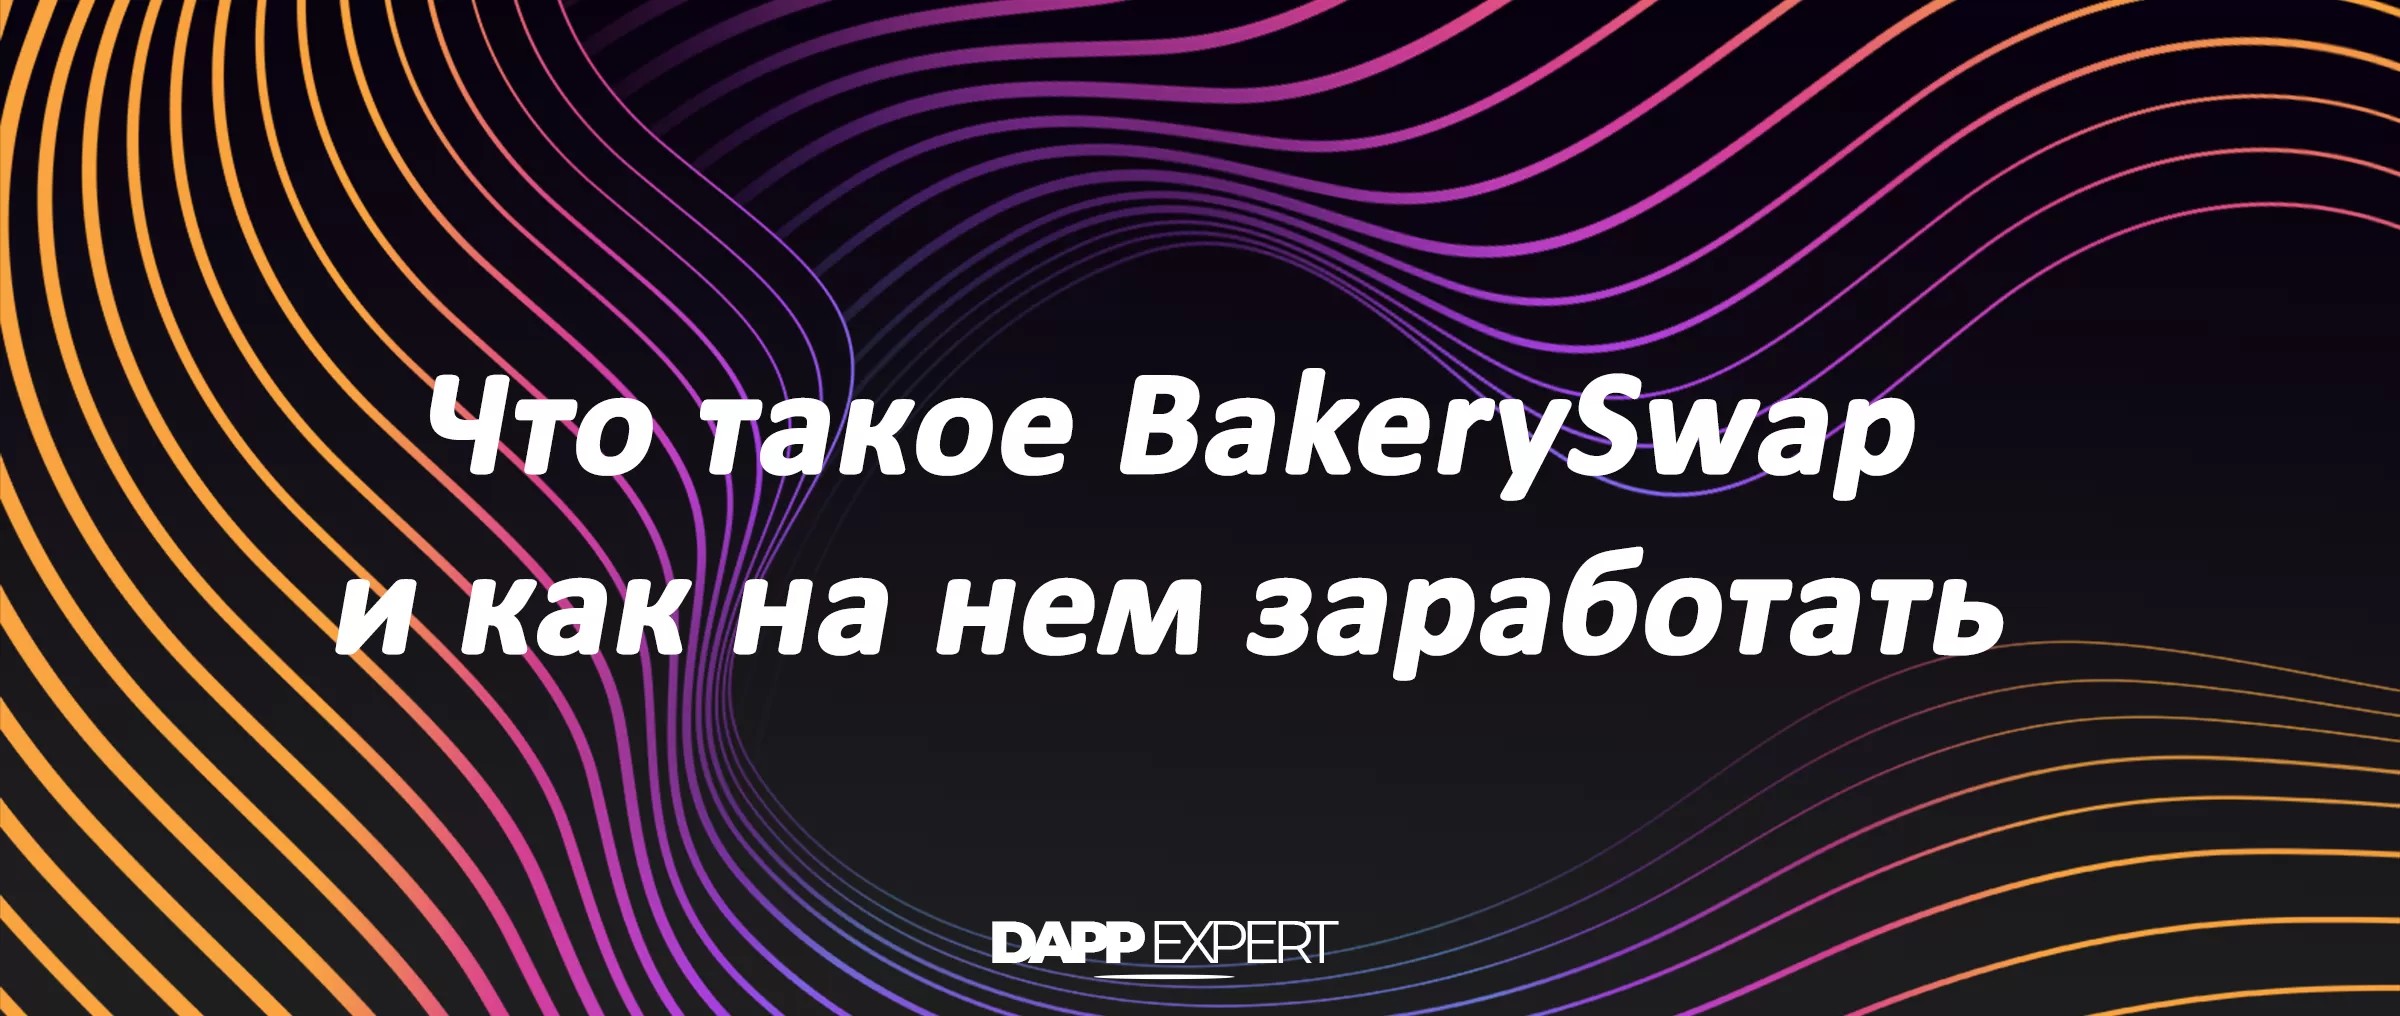 Что такое BakerySwap и как это работает?